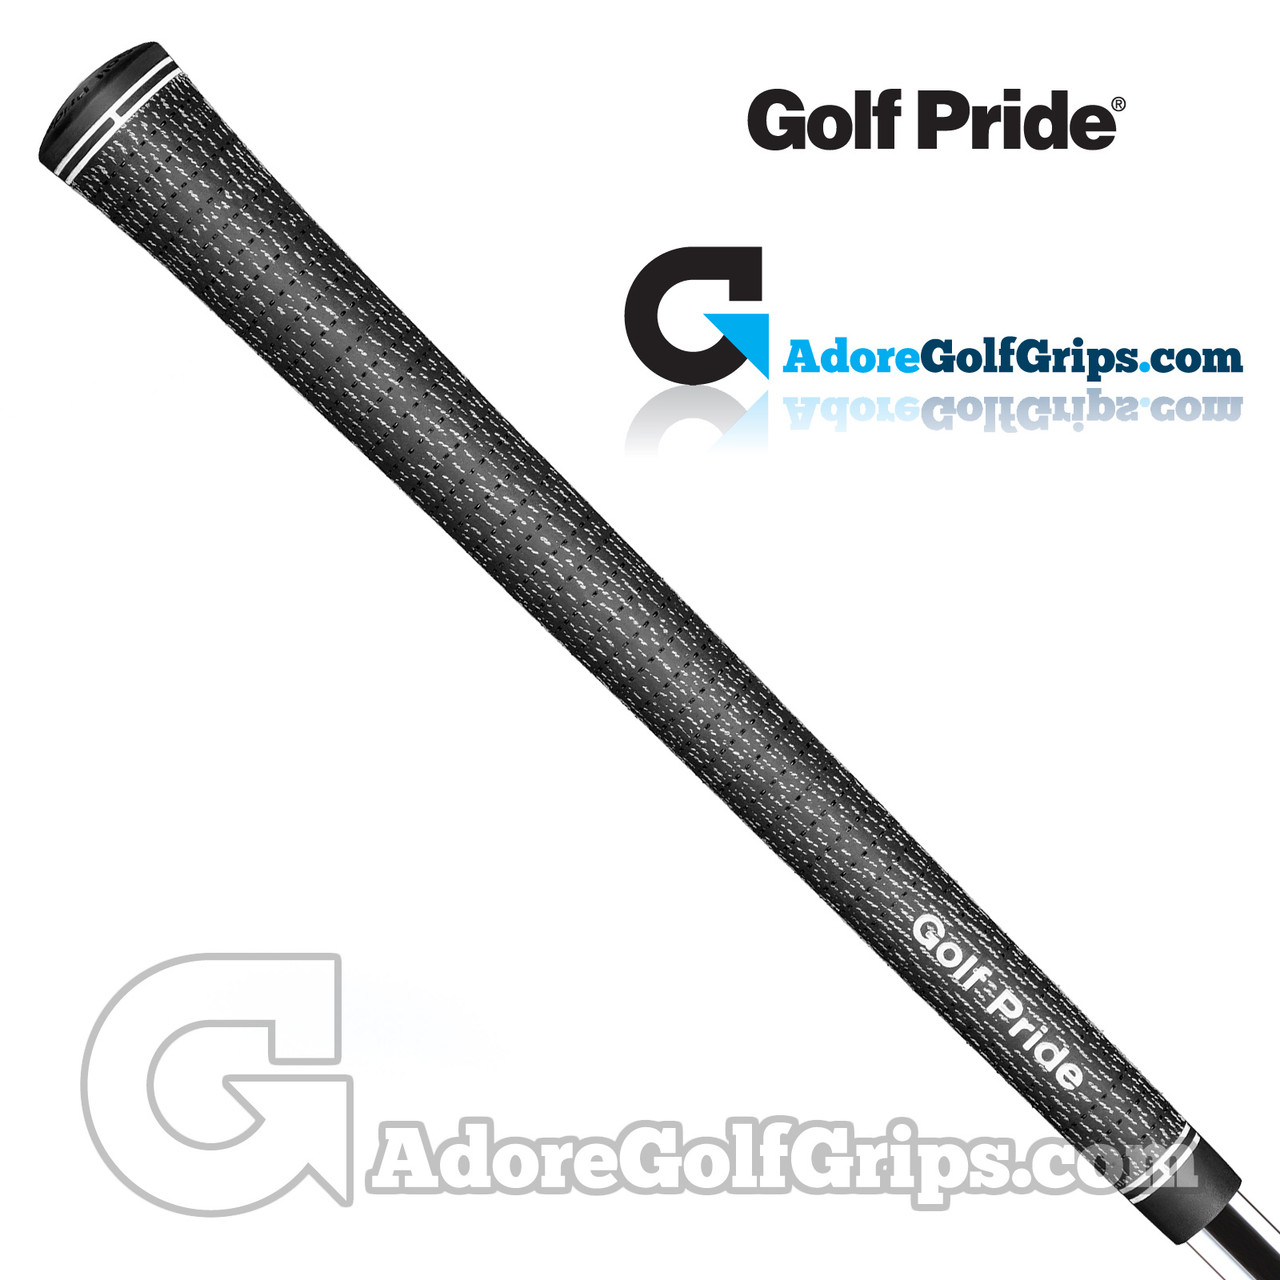 https://cdn11.bigcommerce.com/s-38716/images/stencil/1280x1280/products/39/9195/golf-pride-tour-velvet-bct-full-cord-grips-black__70645.1689173394.jpg?c=2